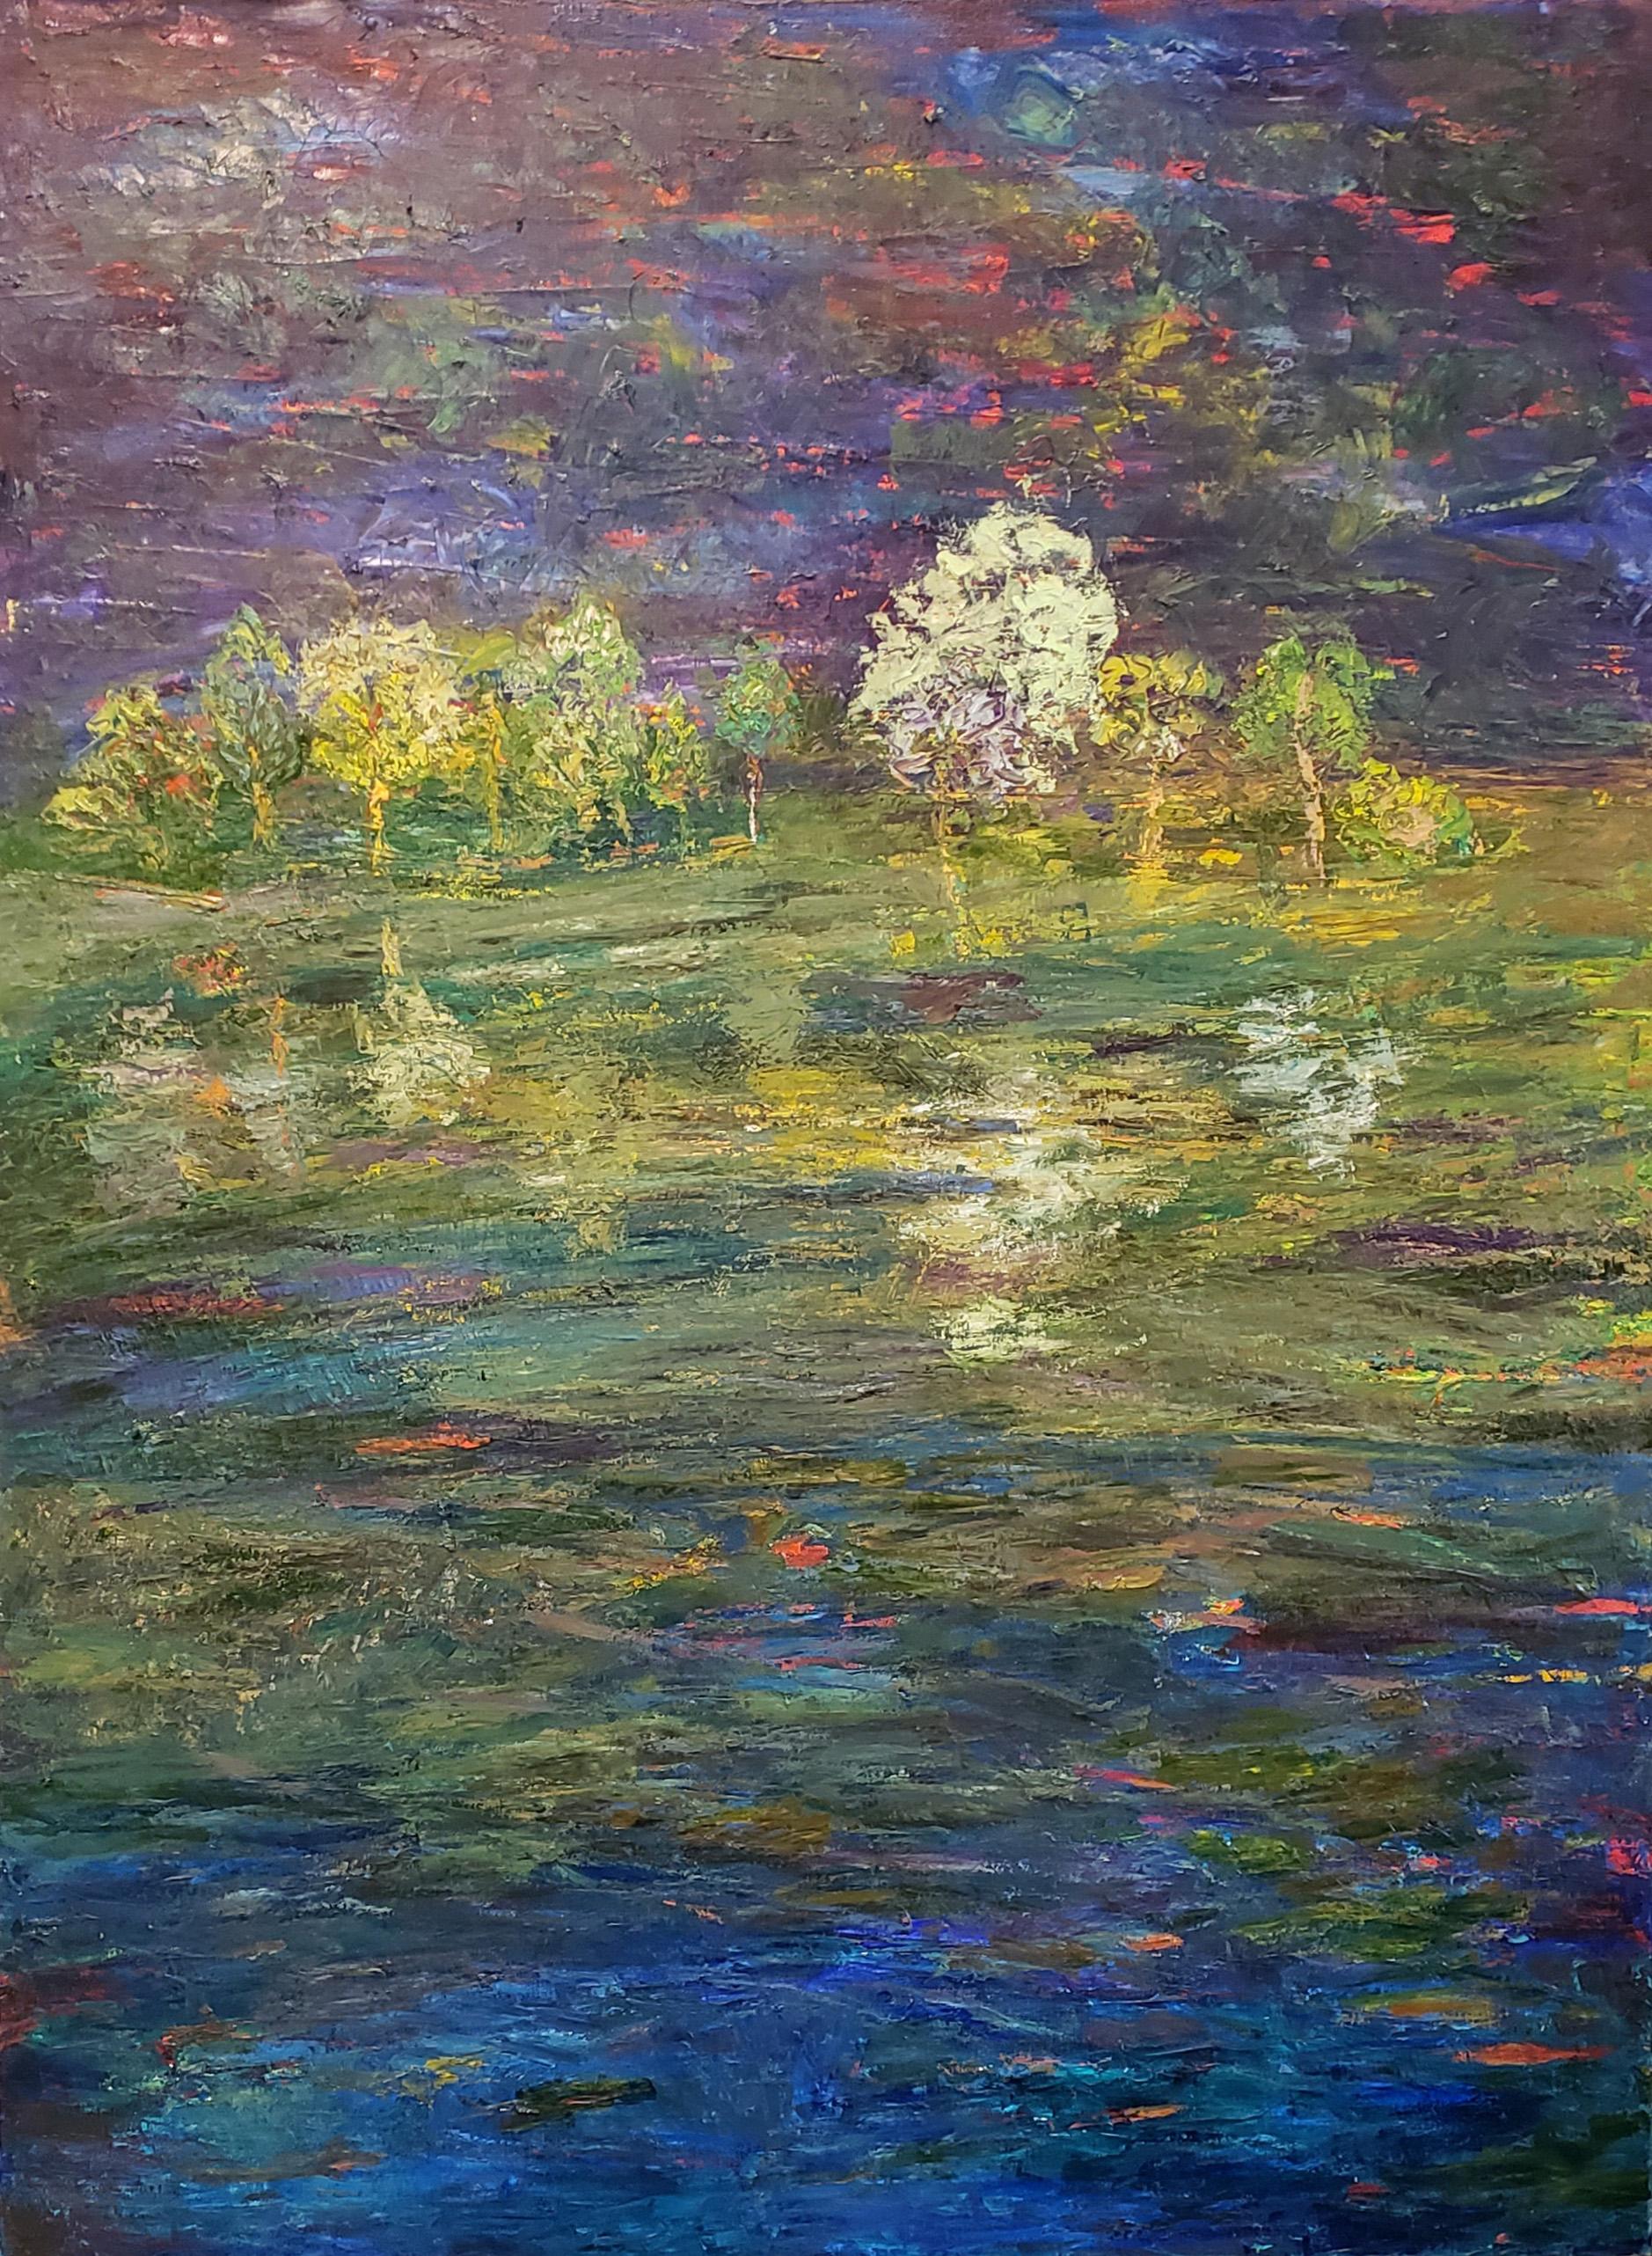 Landscape Painting Marsha Heller - Aquarelle de la nuit, peinture de paysage impressionniste contemporaine texturée originale